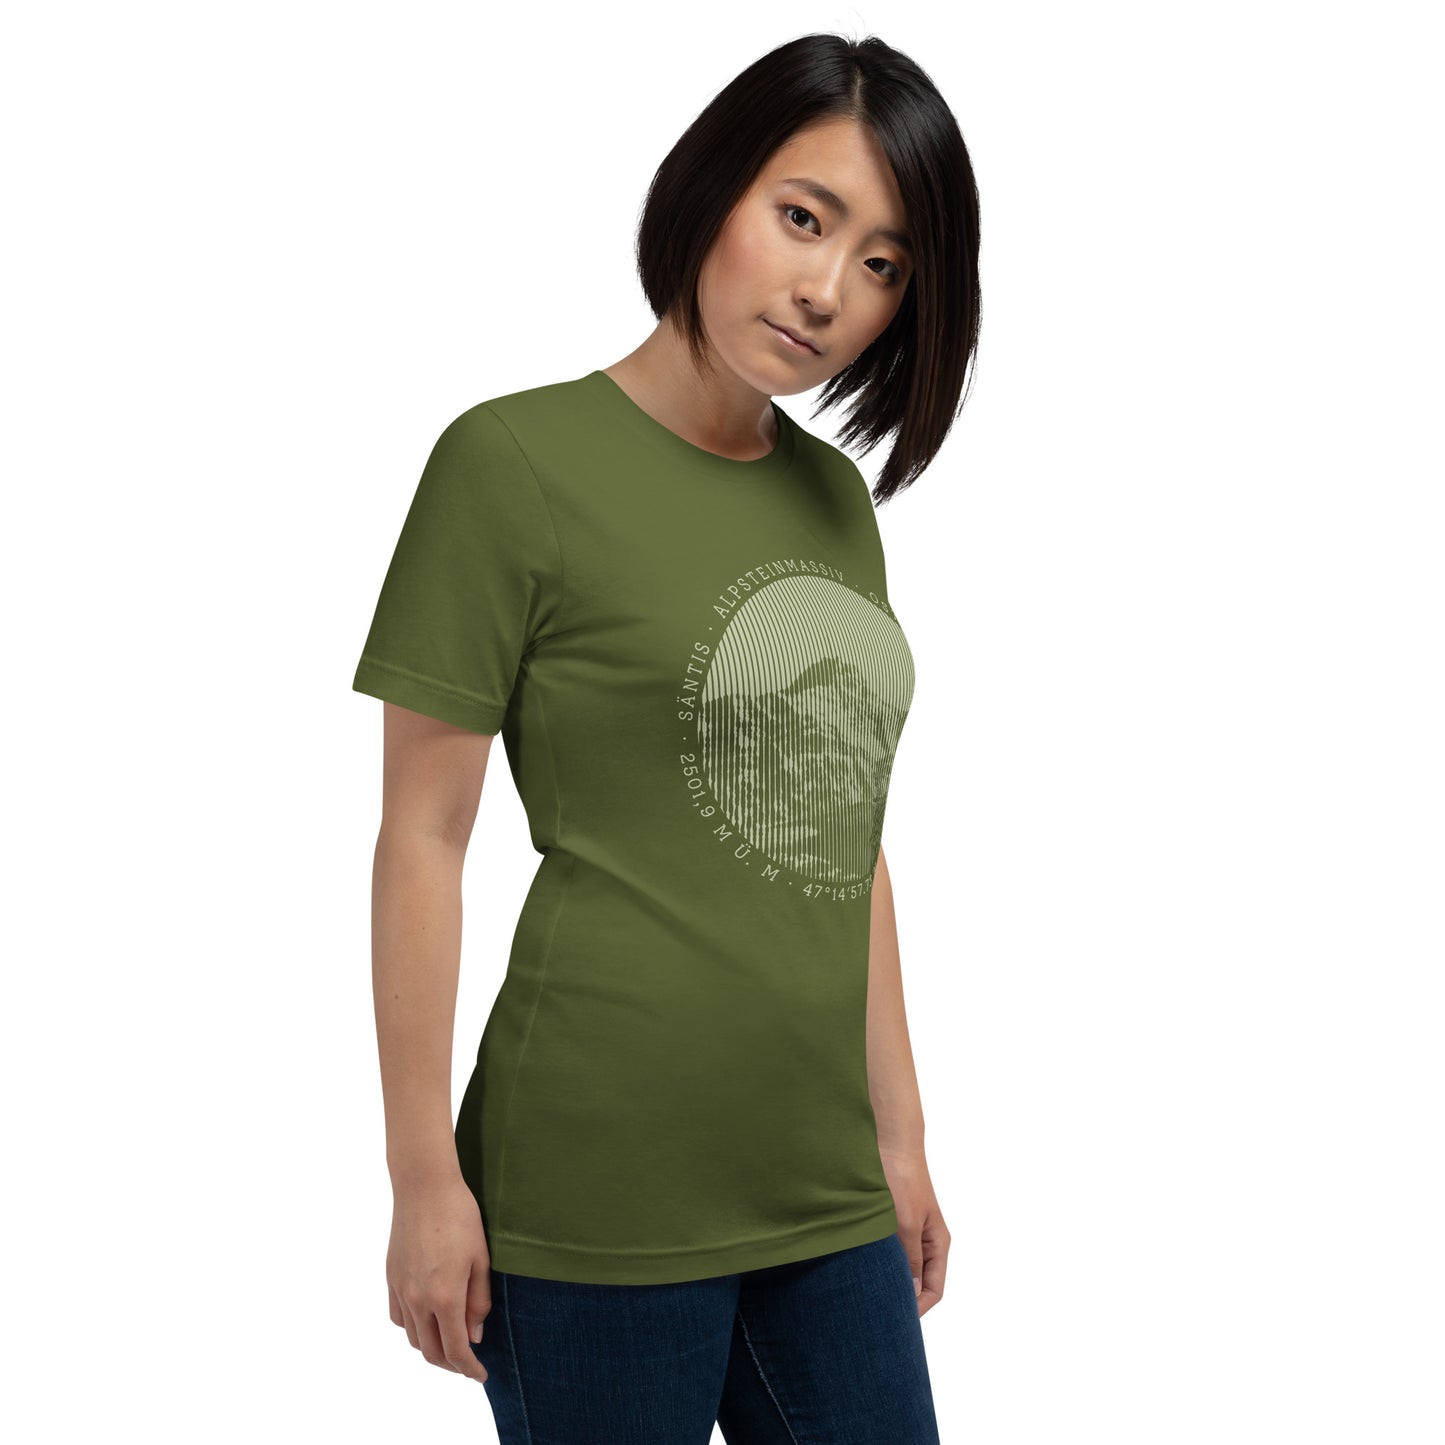 Diese Naturfreundin trägt ein olivgrünes Damen T-Shirt von Vallada mit einem Aufdruck des Säntis-Gipfels. Dieses T-Shirt ist ein Ausdruck ihres Enthusiasmus für die Region des Alpsteins.